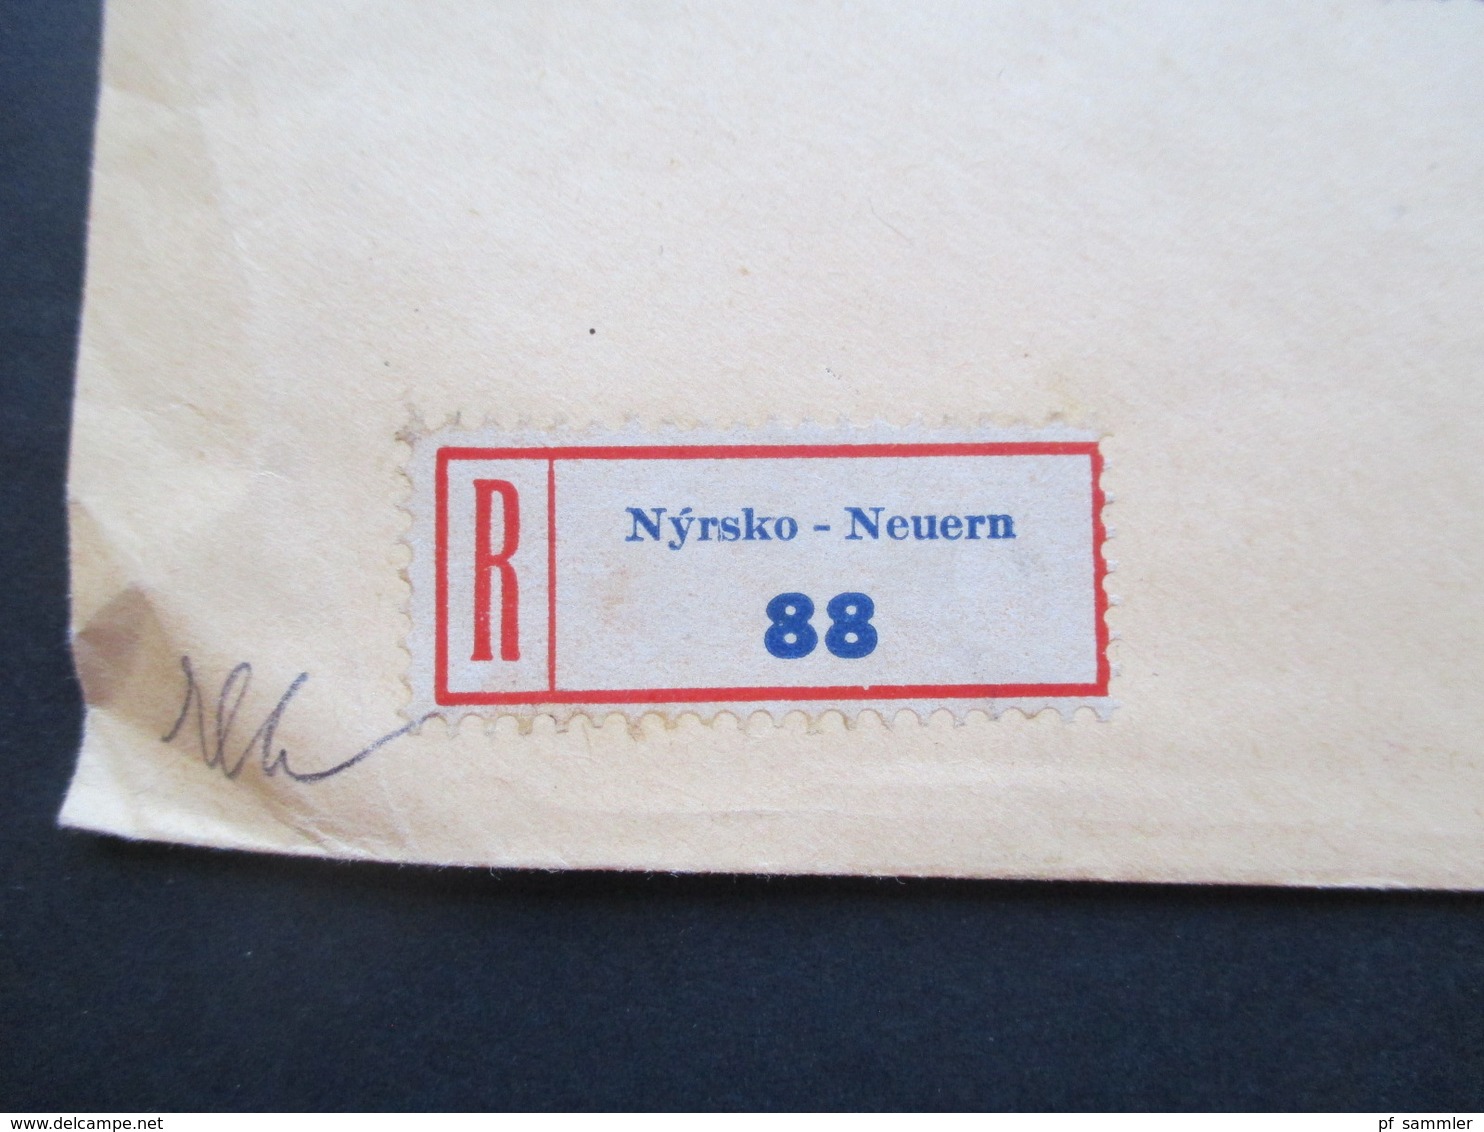 CSSR / Sudetenland 1934 Beleg Advokat Leopold Goldbach Neuern Zweisprachiger Stempel Nyrsko / Neuern Einschreiben!! - Briefe U. Dokumente